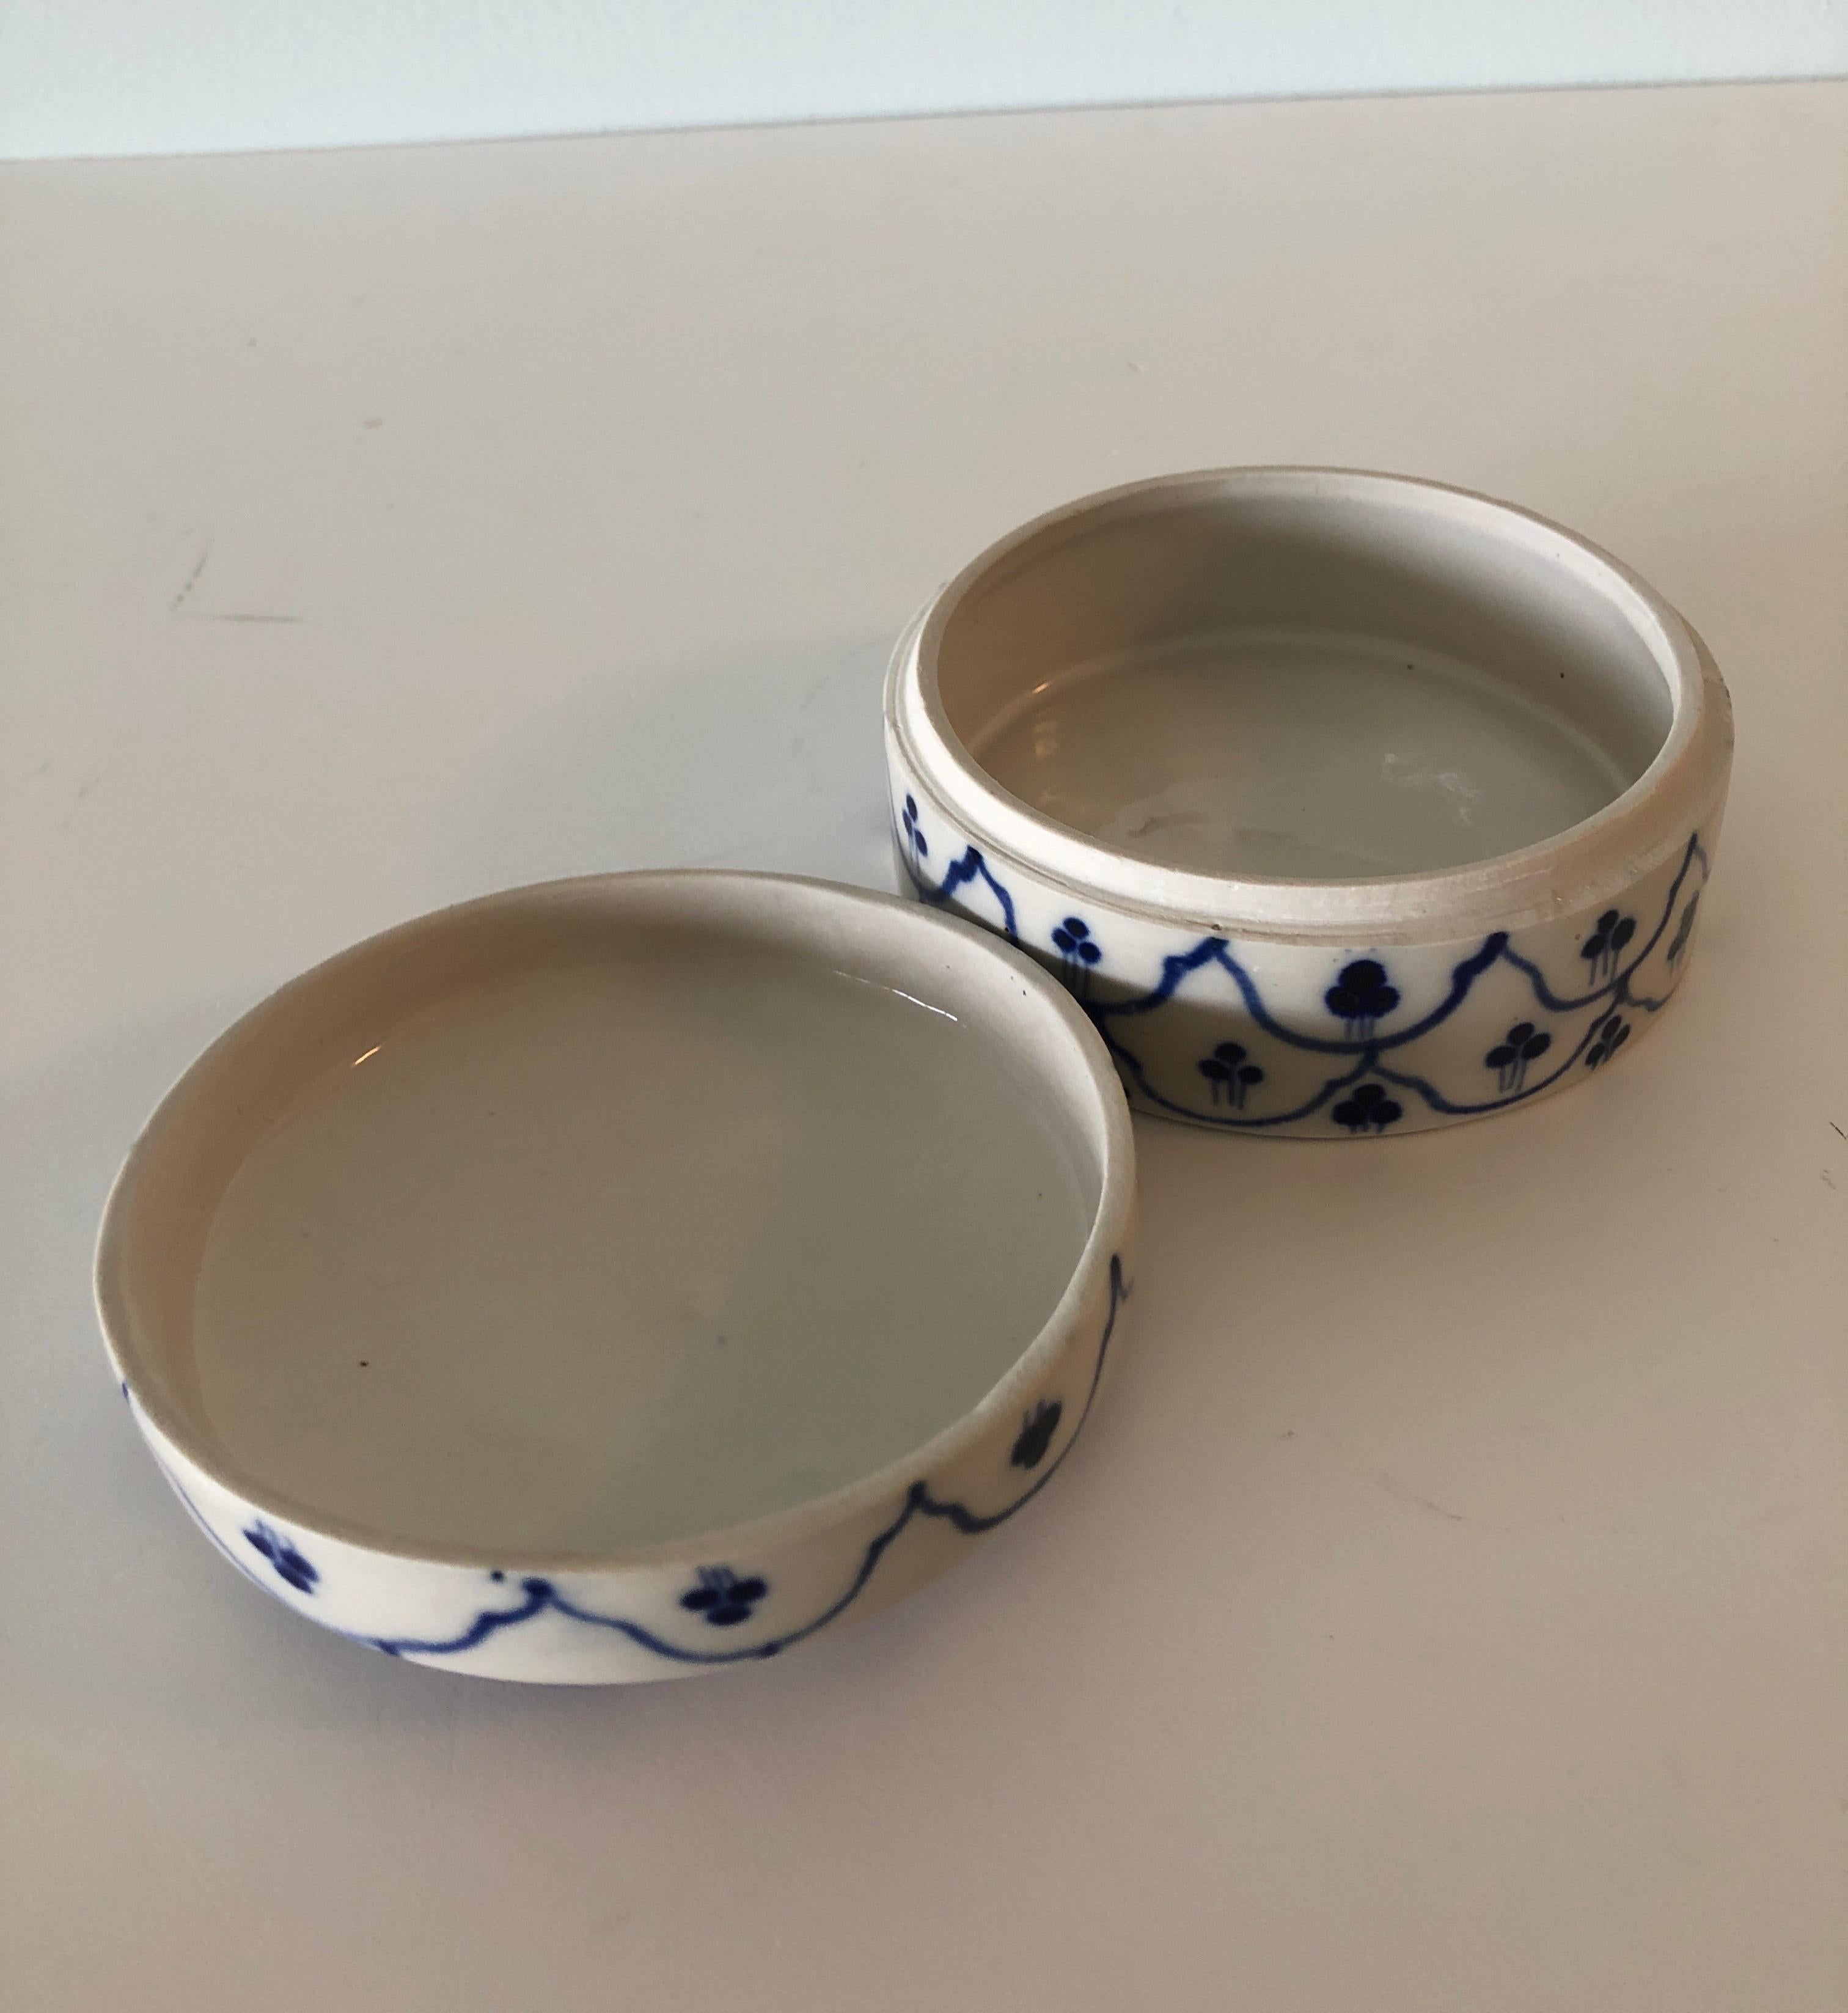 Chinese Export Round Blue and White Ceramic Decorative Box